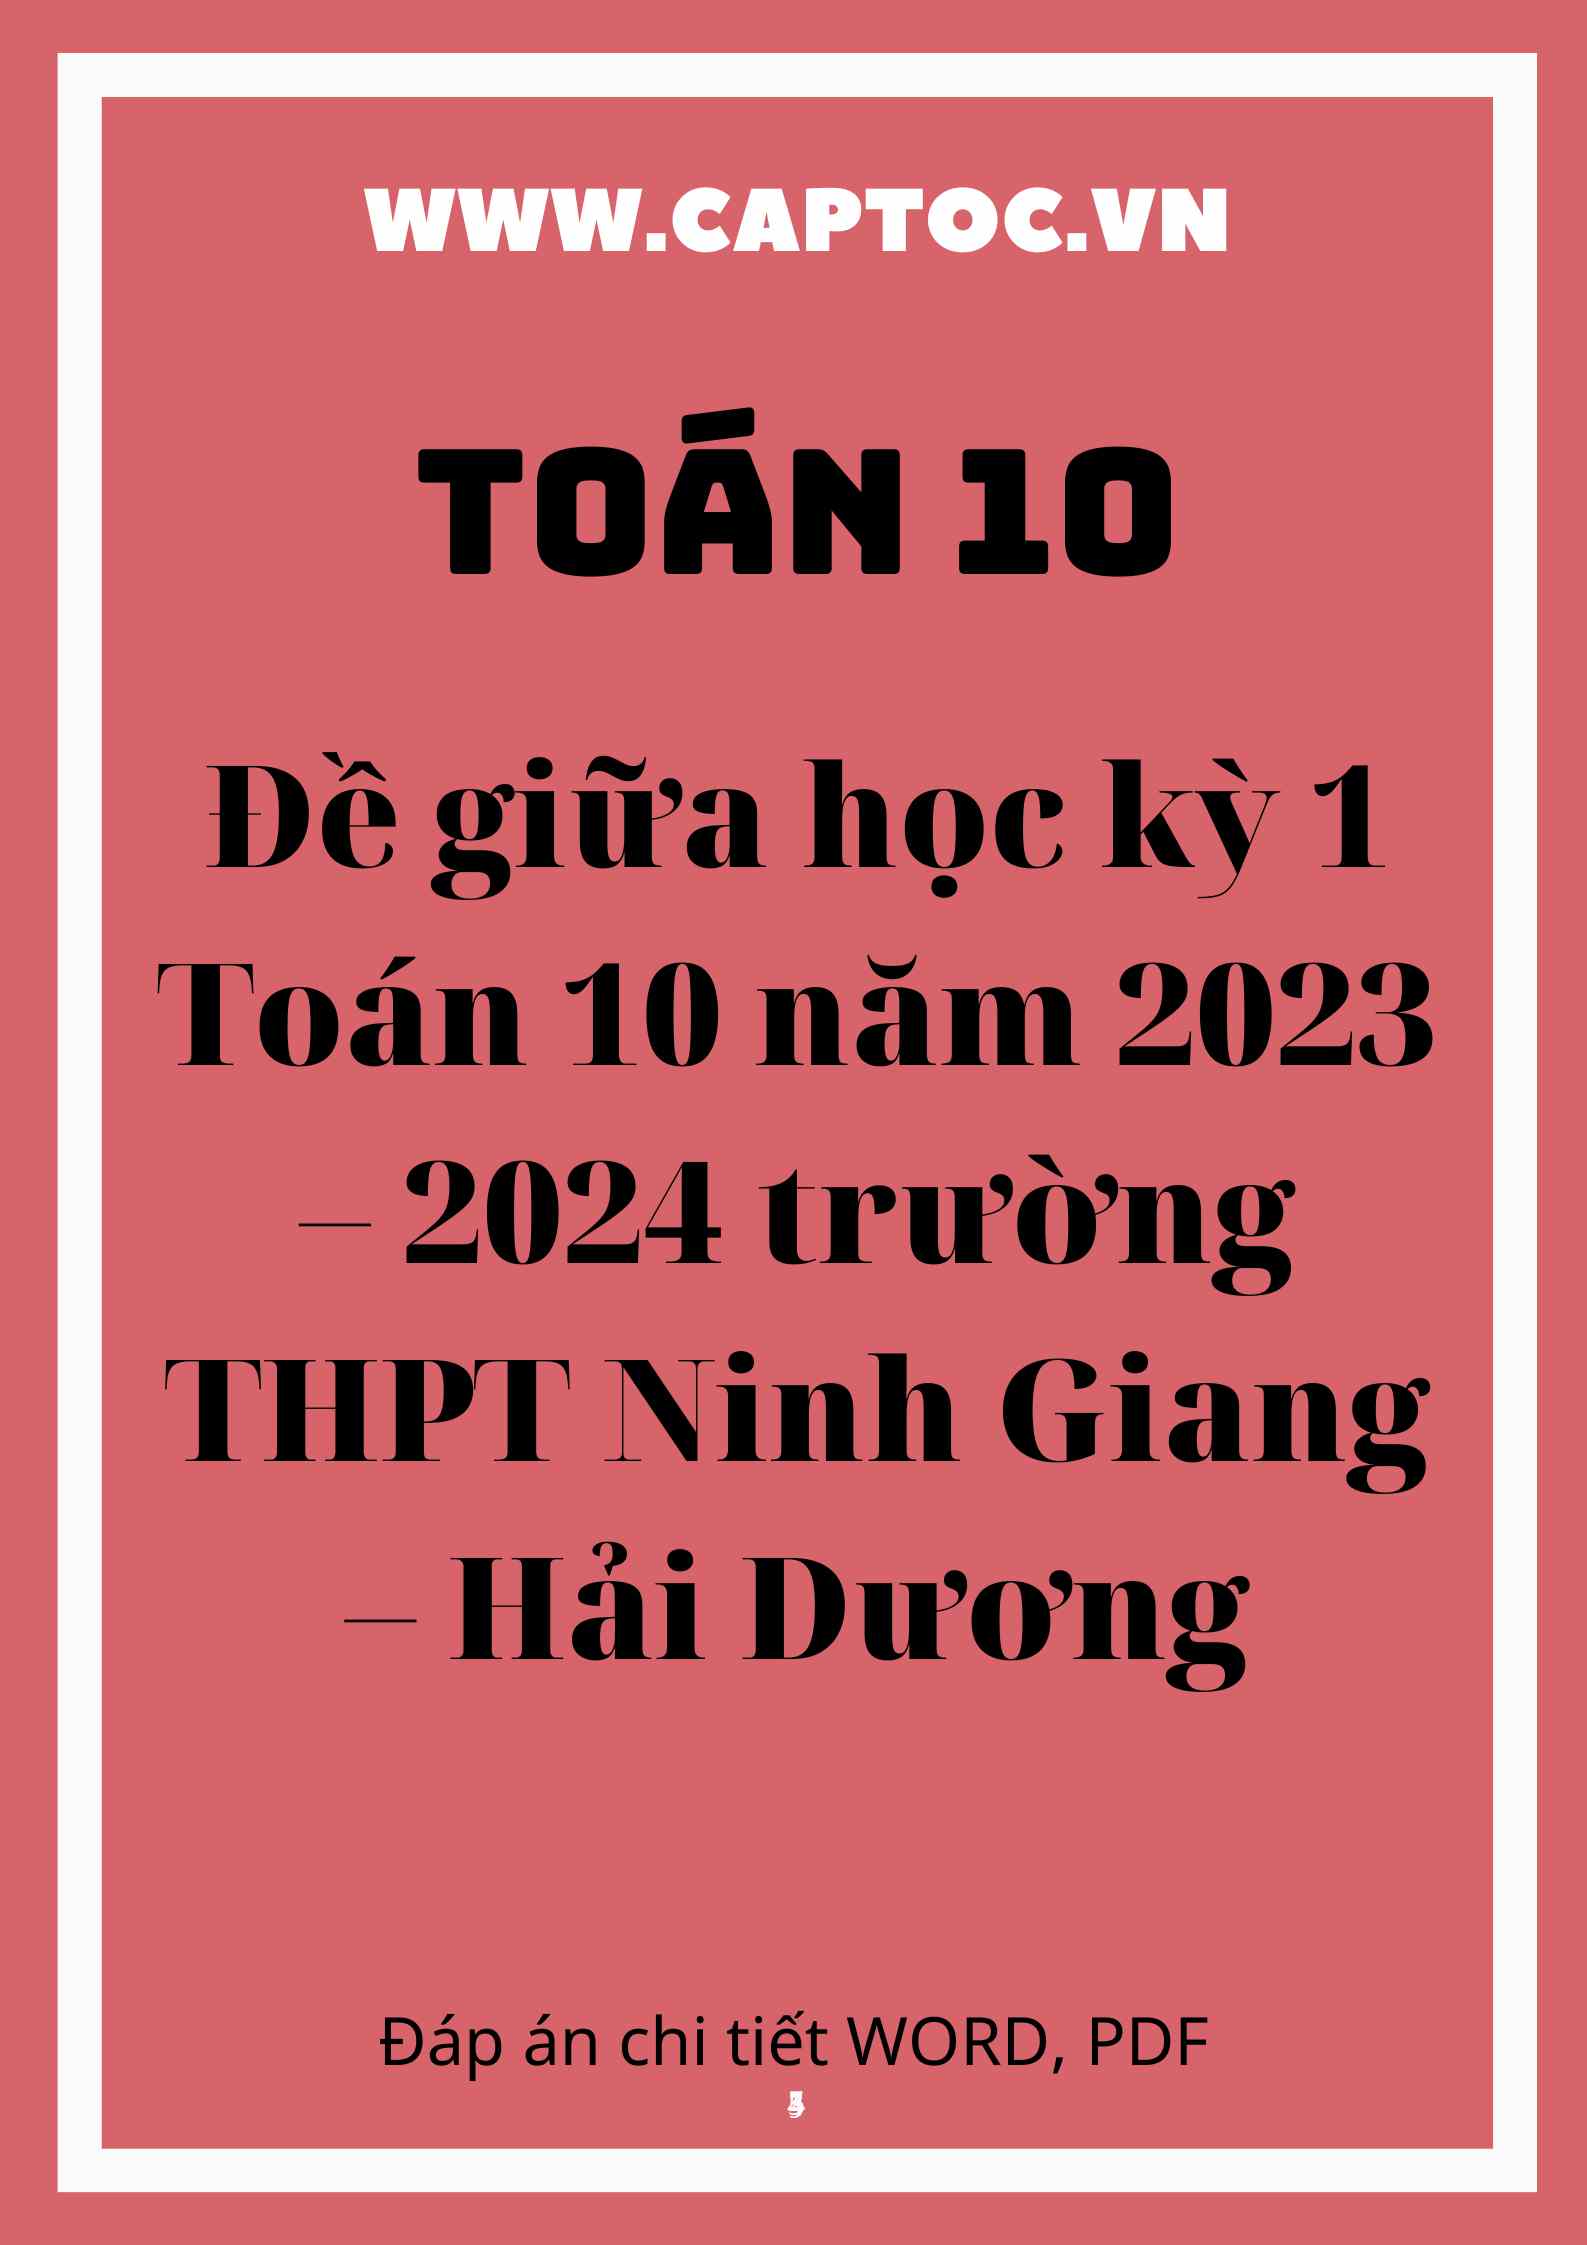 Đề giữa học kỳ 1 Toán 10 năm 2023 – 2024 trường THPT Ninh Giang – Hải Dương